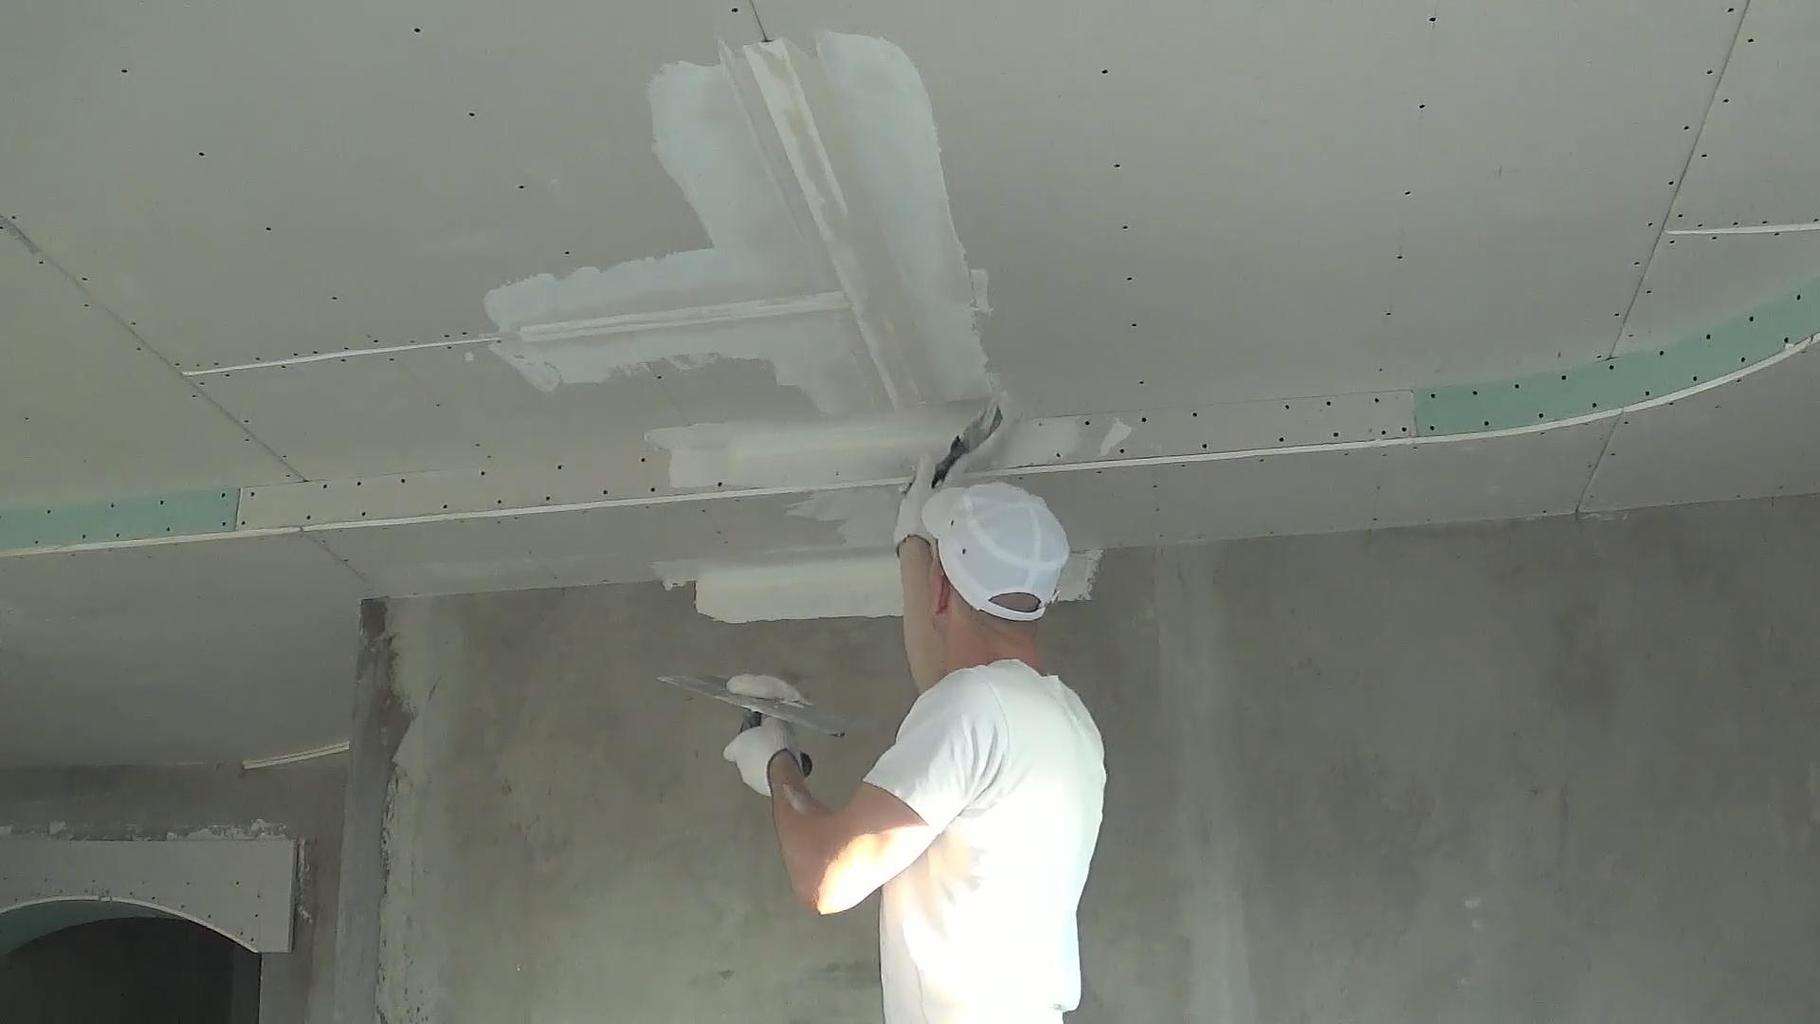 Шпаклевка потолка из гипсокартона под покраску своими руками: как правильно (видео)